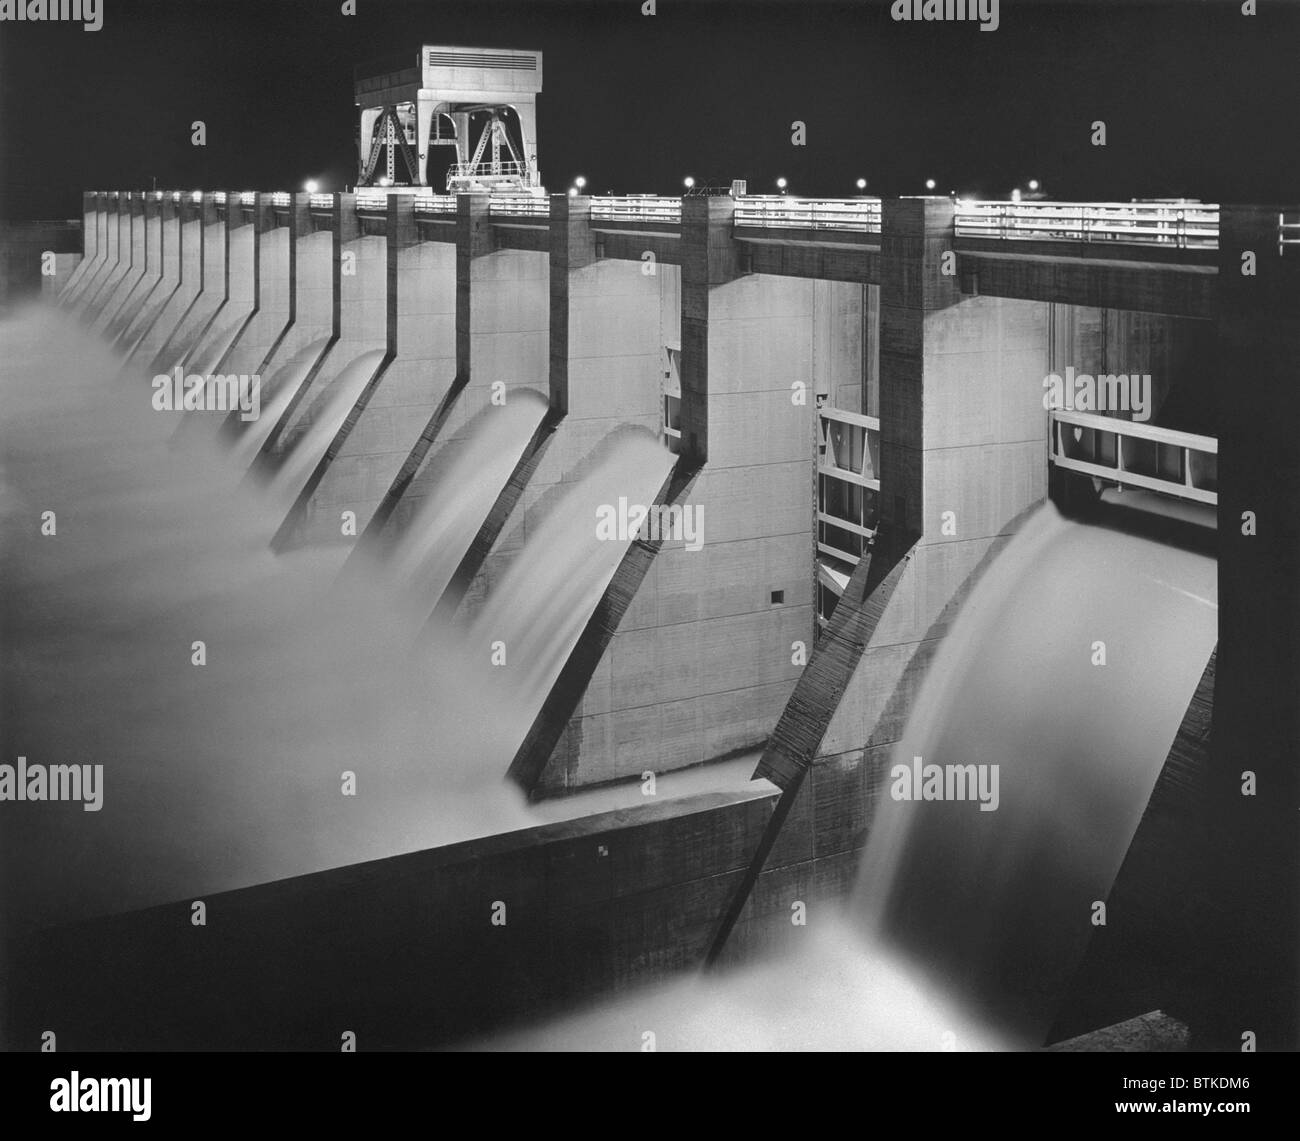 Chickamauga Dam, construido por la empresa eléctrica Tennessee Valley Authority (TVA), era un proyecto nuevo proyecto de obras públicas para llevar el control de las inundaciones, la electricidad, el desarrollo económico y la depresión asolado valle de Tennessee. Ca. 1940. Foto de stock